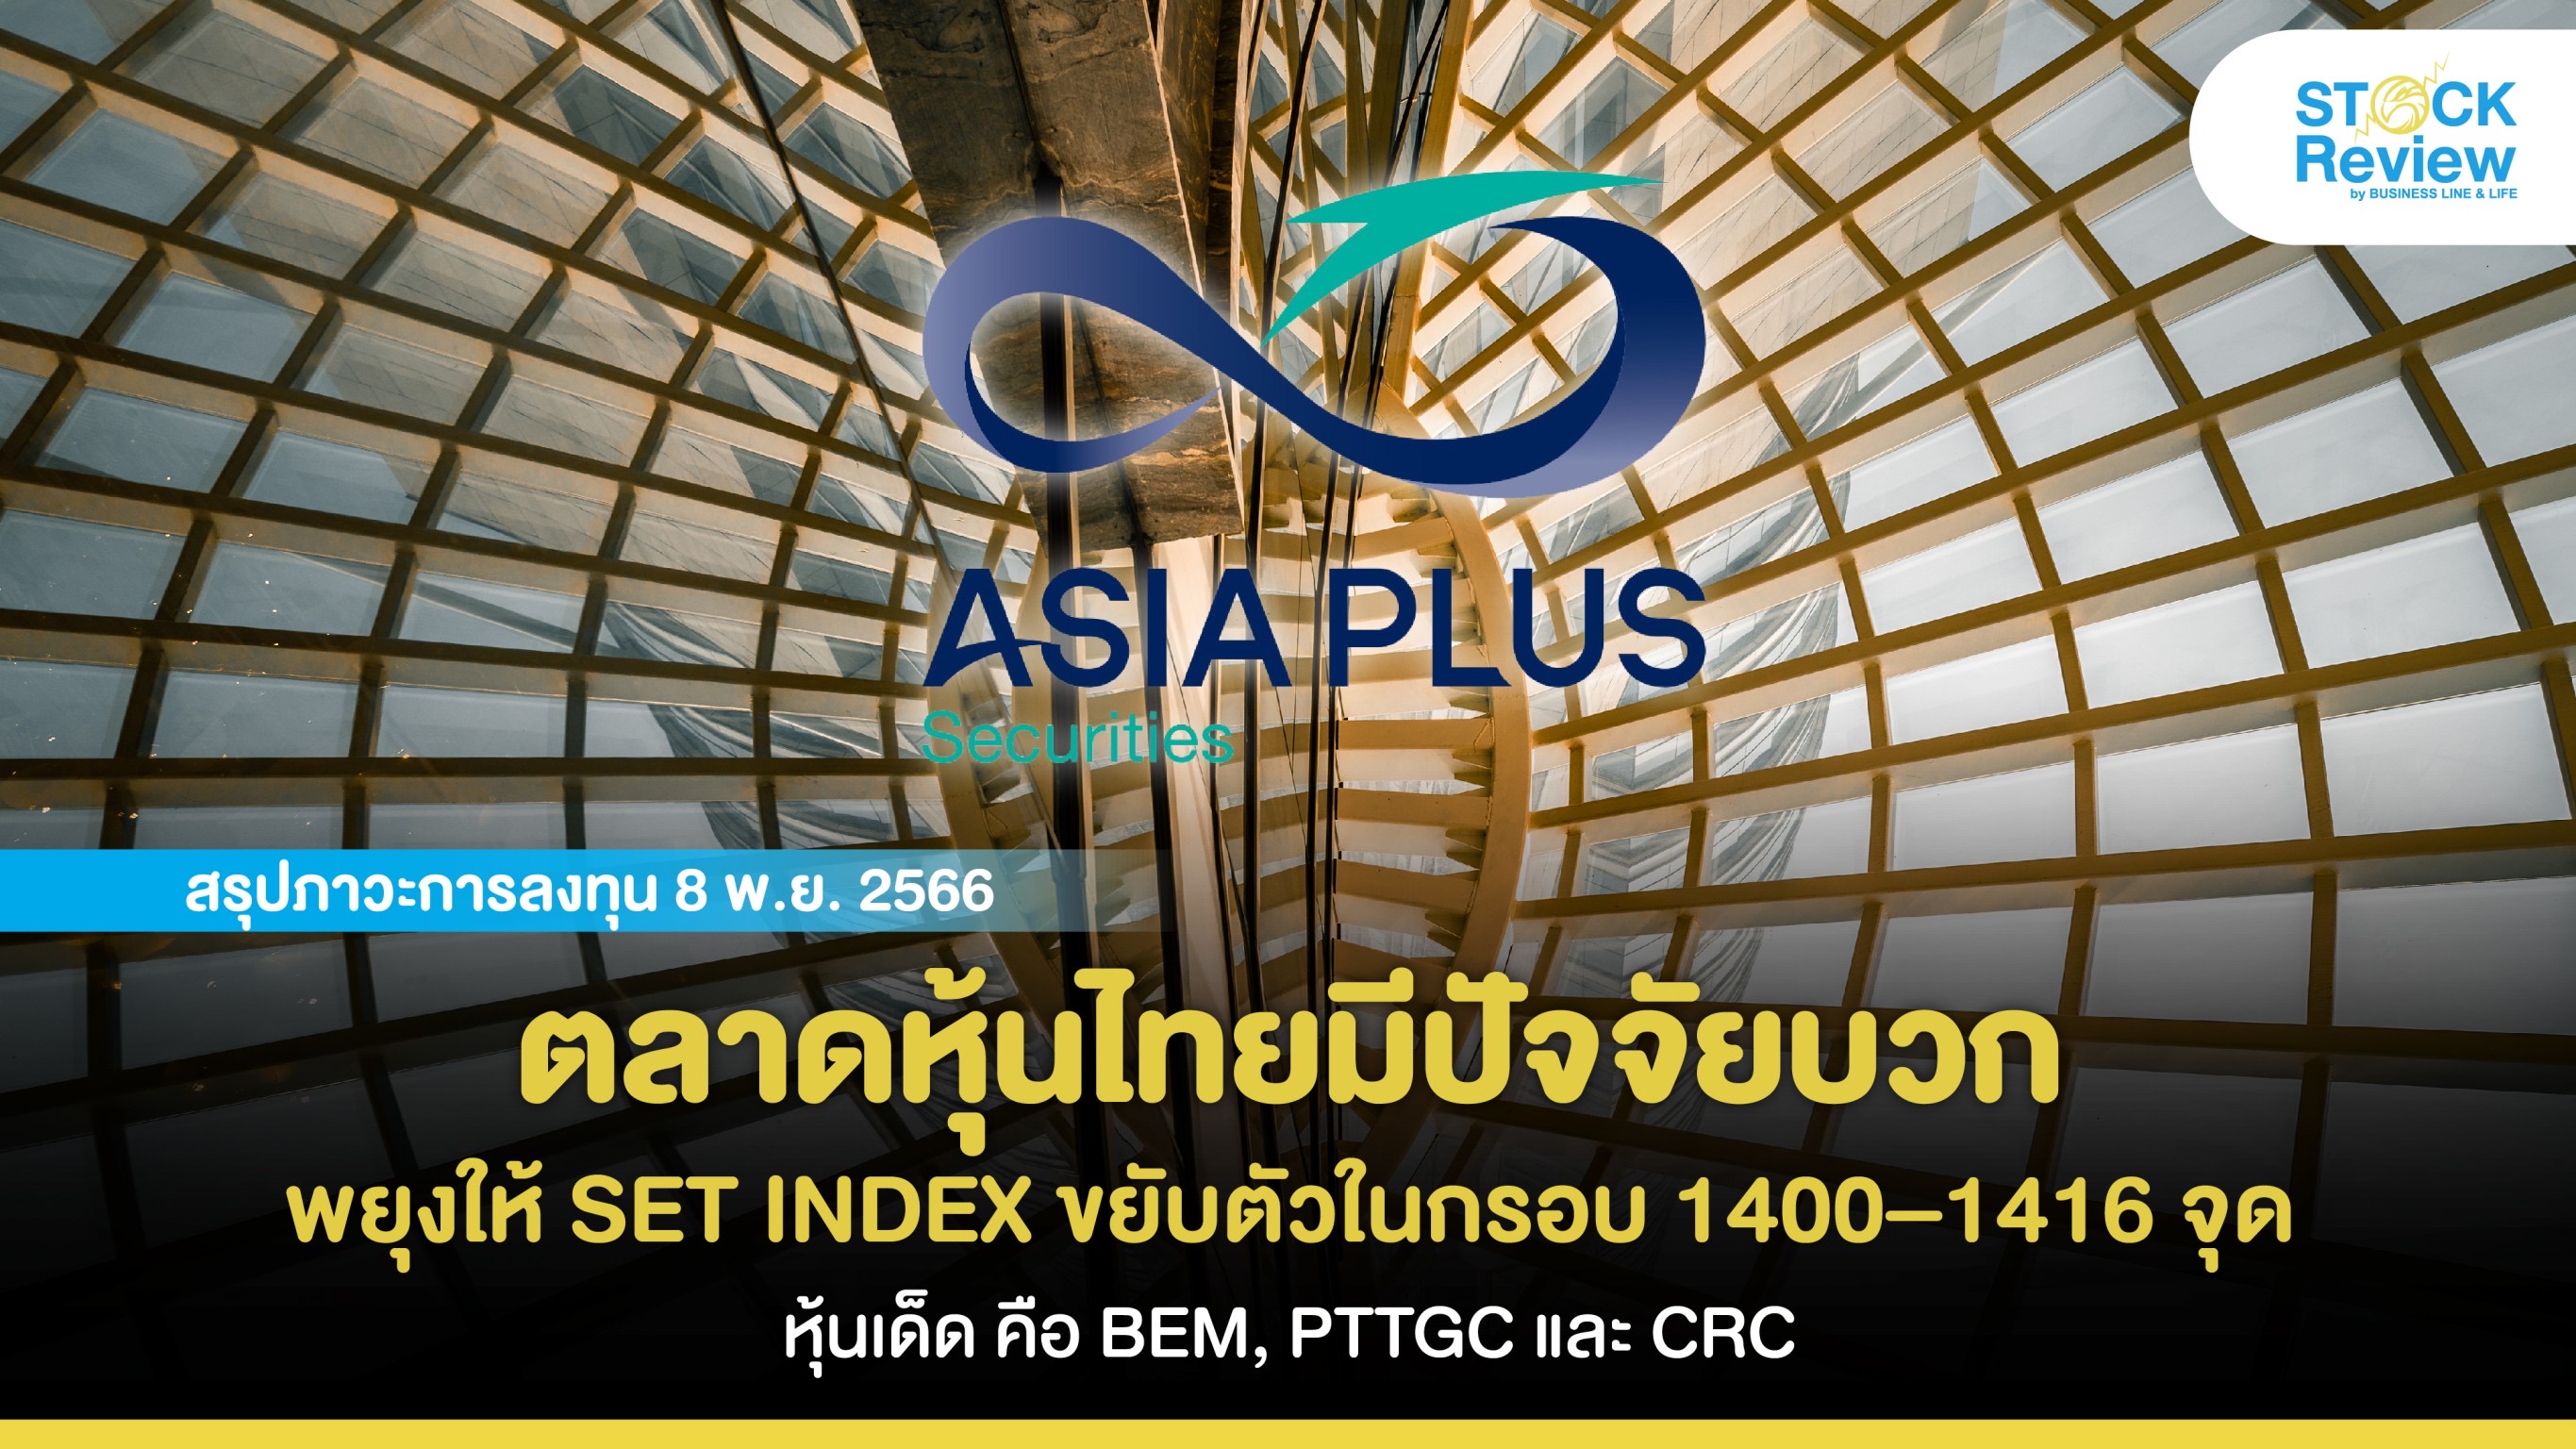 ตลาดหุ้นไทยมีปัจจัยบวกมากกว่าลบ พยุงให้ SET INDEX ขยับตัวในกรอบ 1400 – 1416 จุด โดยหุ้นเด็ด คือ BEM, PTTGC และ CRC